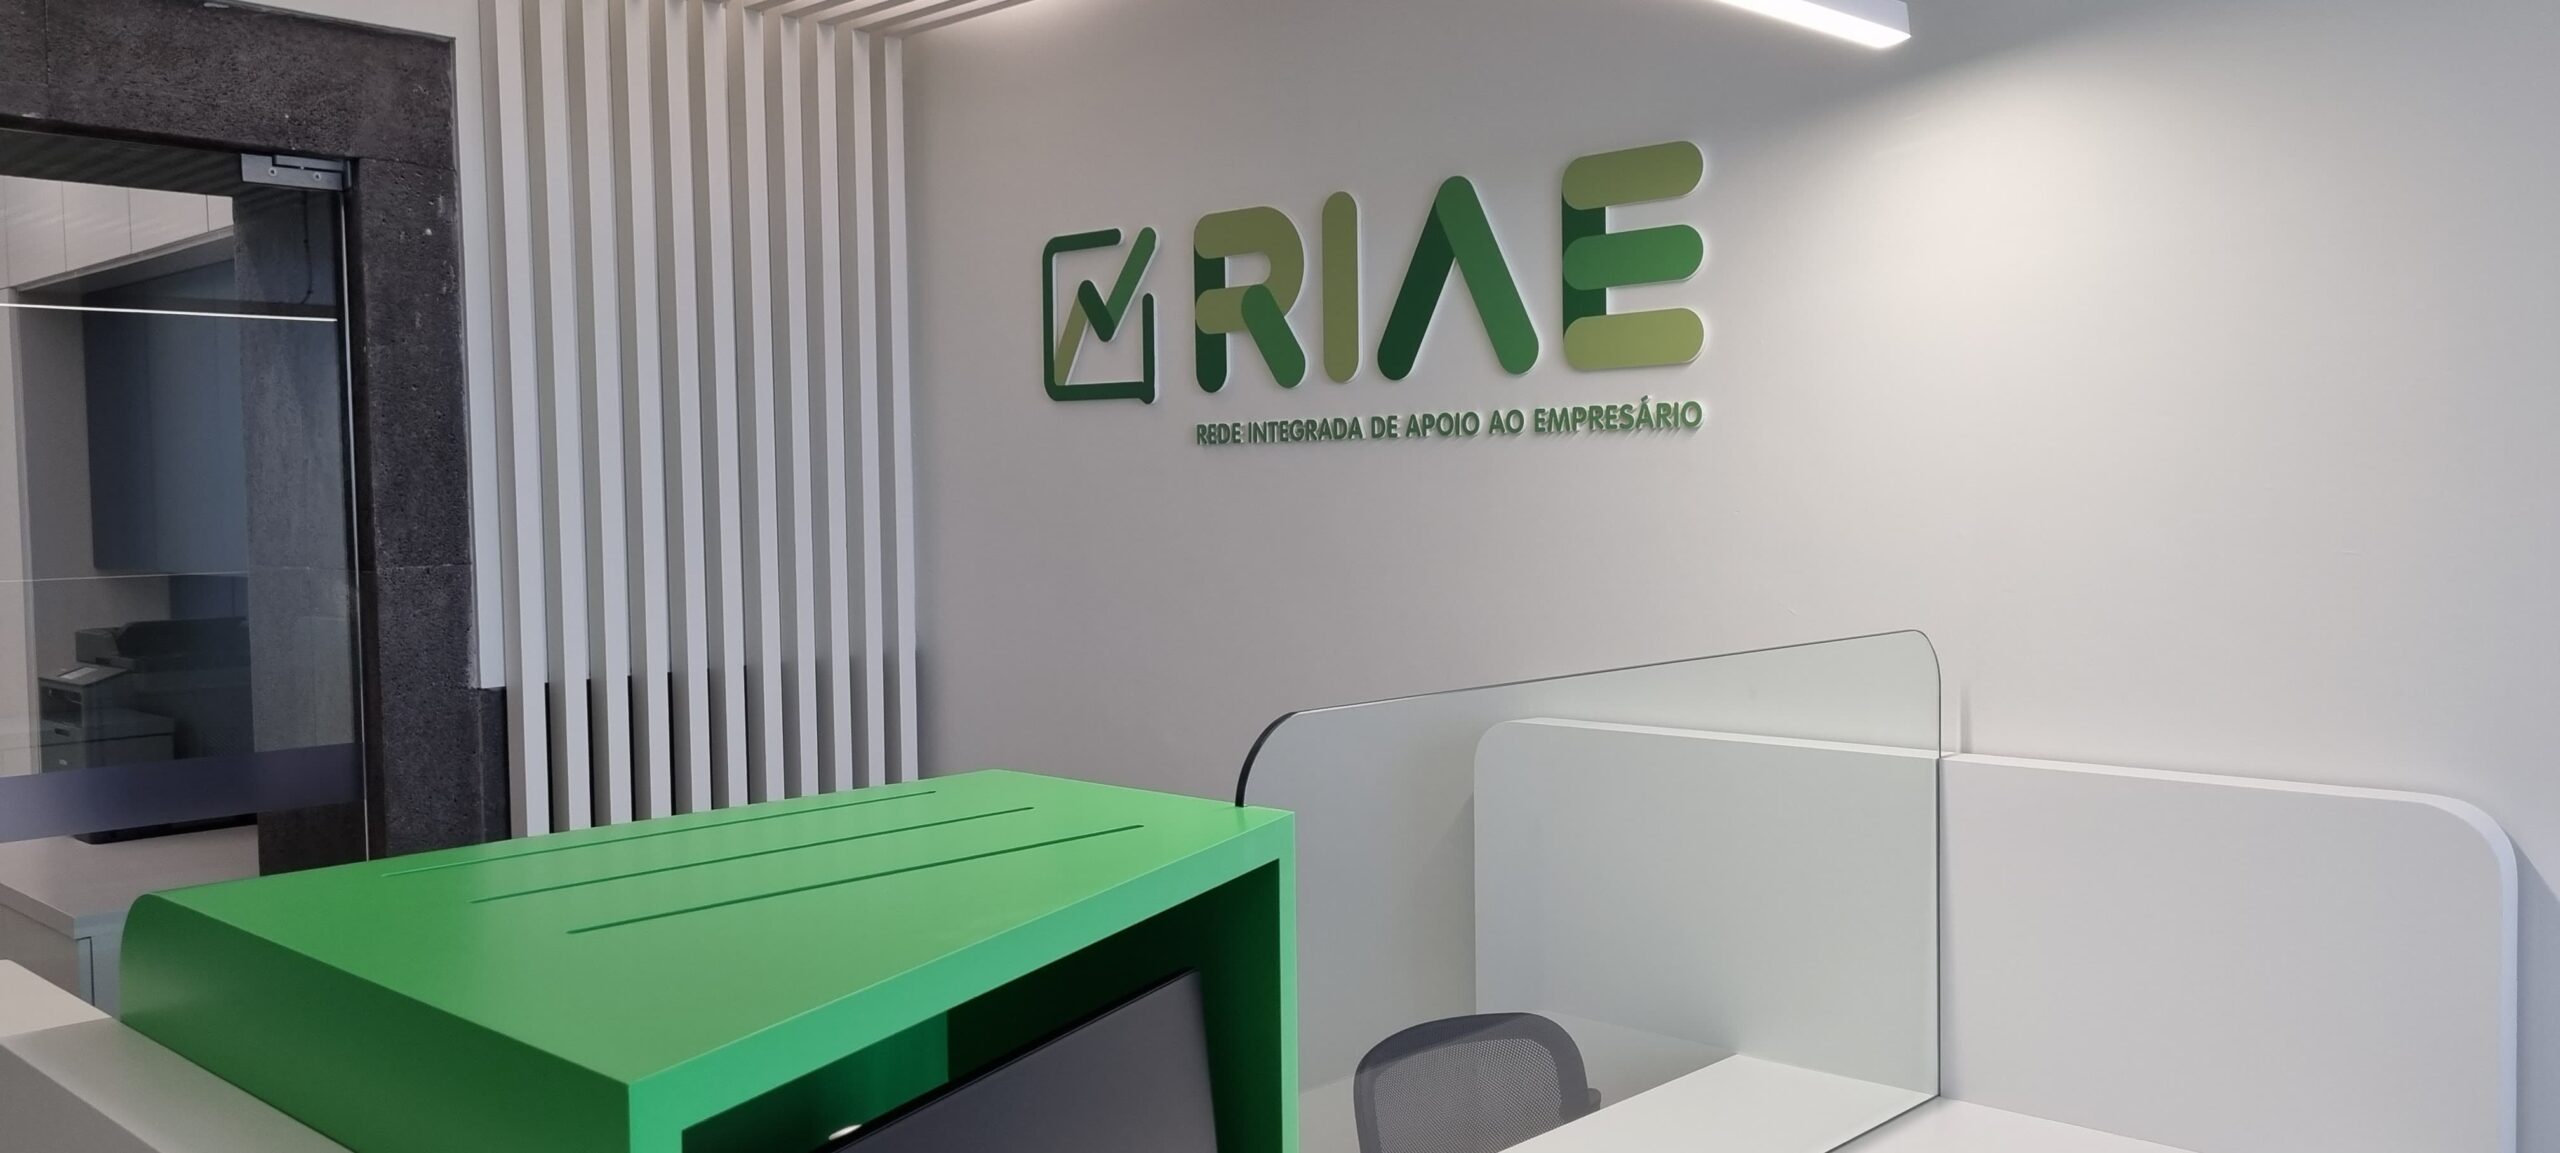 Duarte Freitas inaugura o primeiro posto RIAC – RIAE, no concelho de São Roque do Pico